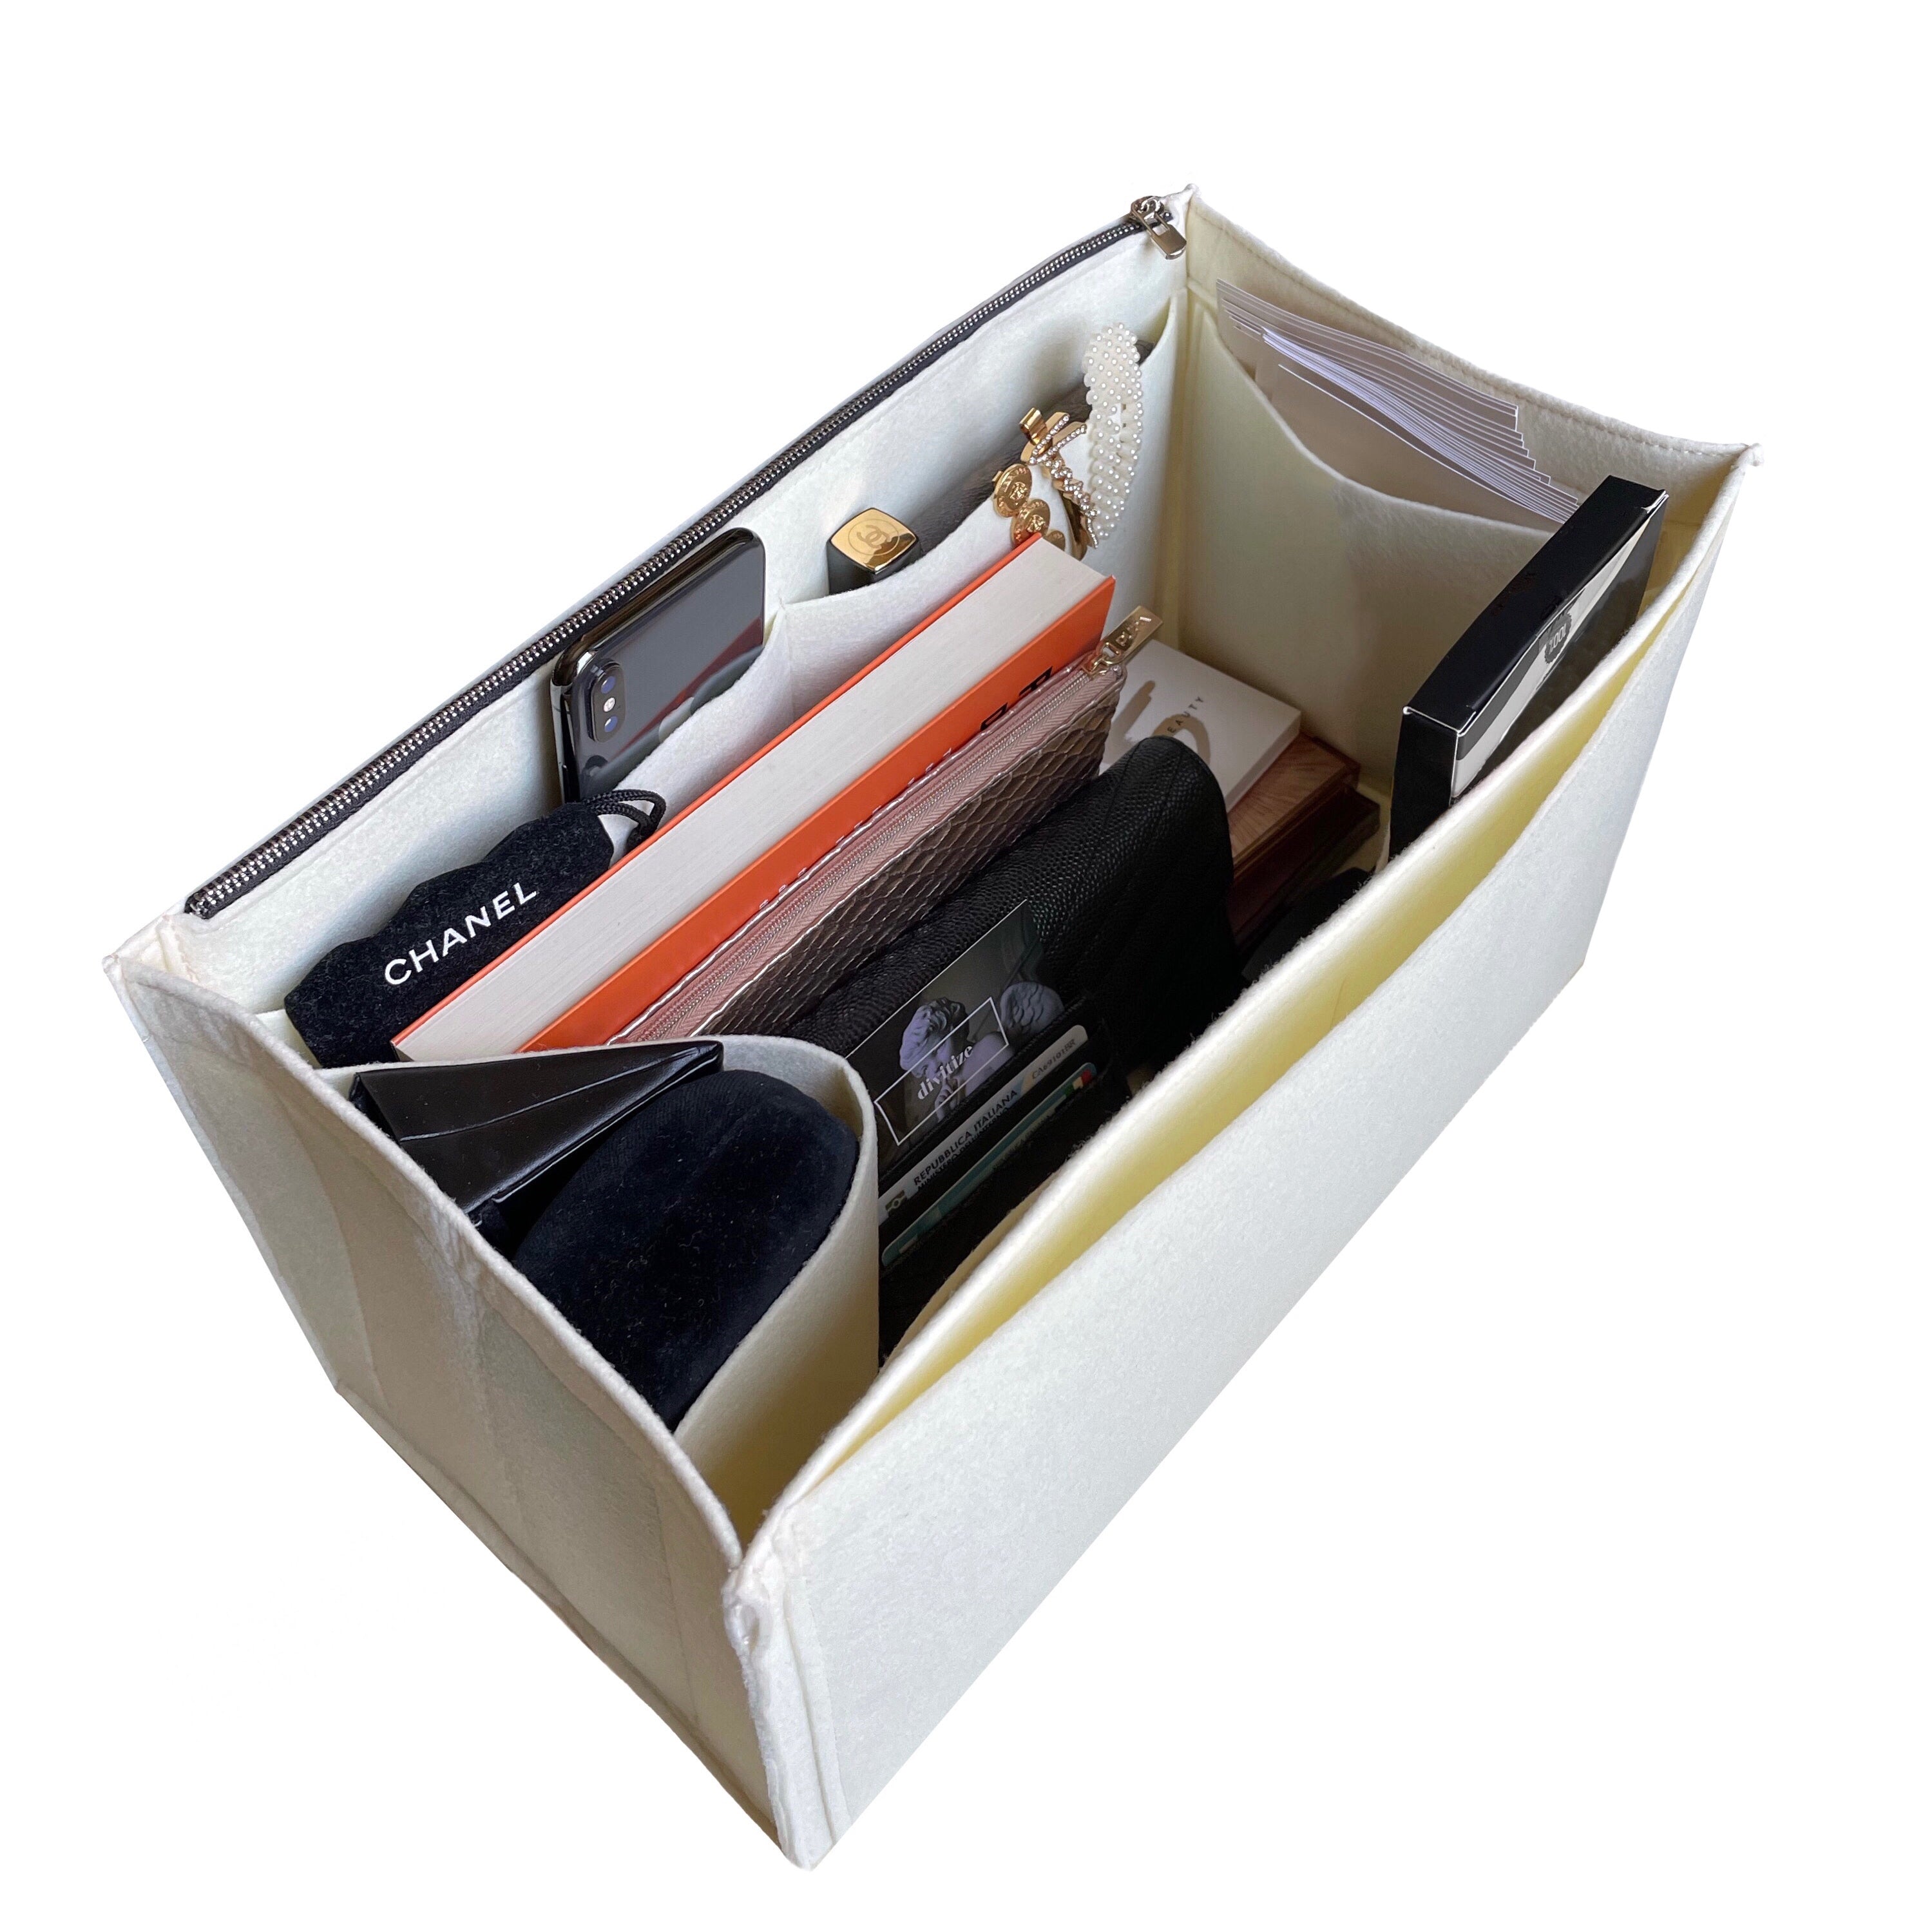 BaginBag® | Handbag Organizer For Fendi FF Shopper Bag | Fendi Purse Insert  | Bag Liner | Fendi Insert Organizer |  Fendi Tote  Organizer | Bag Organizer | Luxury bag |  Fendi Bag protector |  Fendi Tote Insert | Fendi Inner Bag